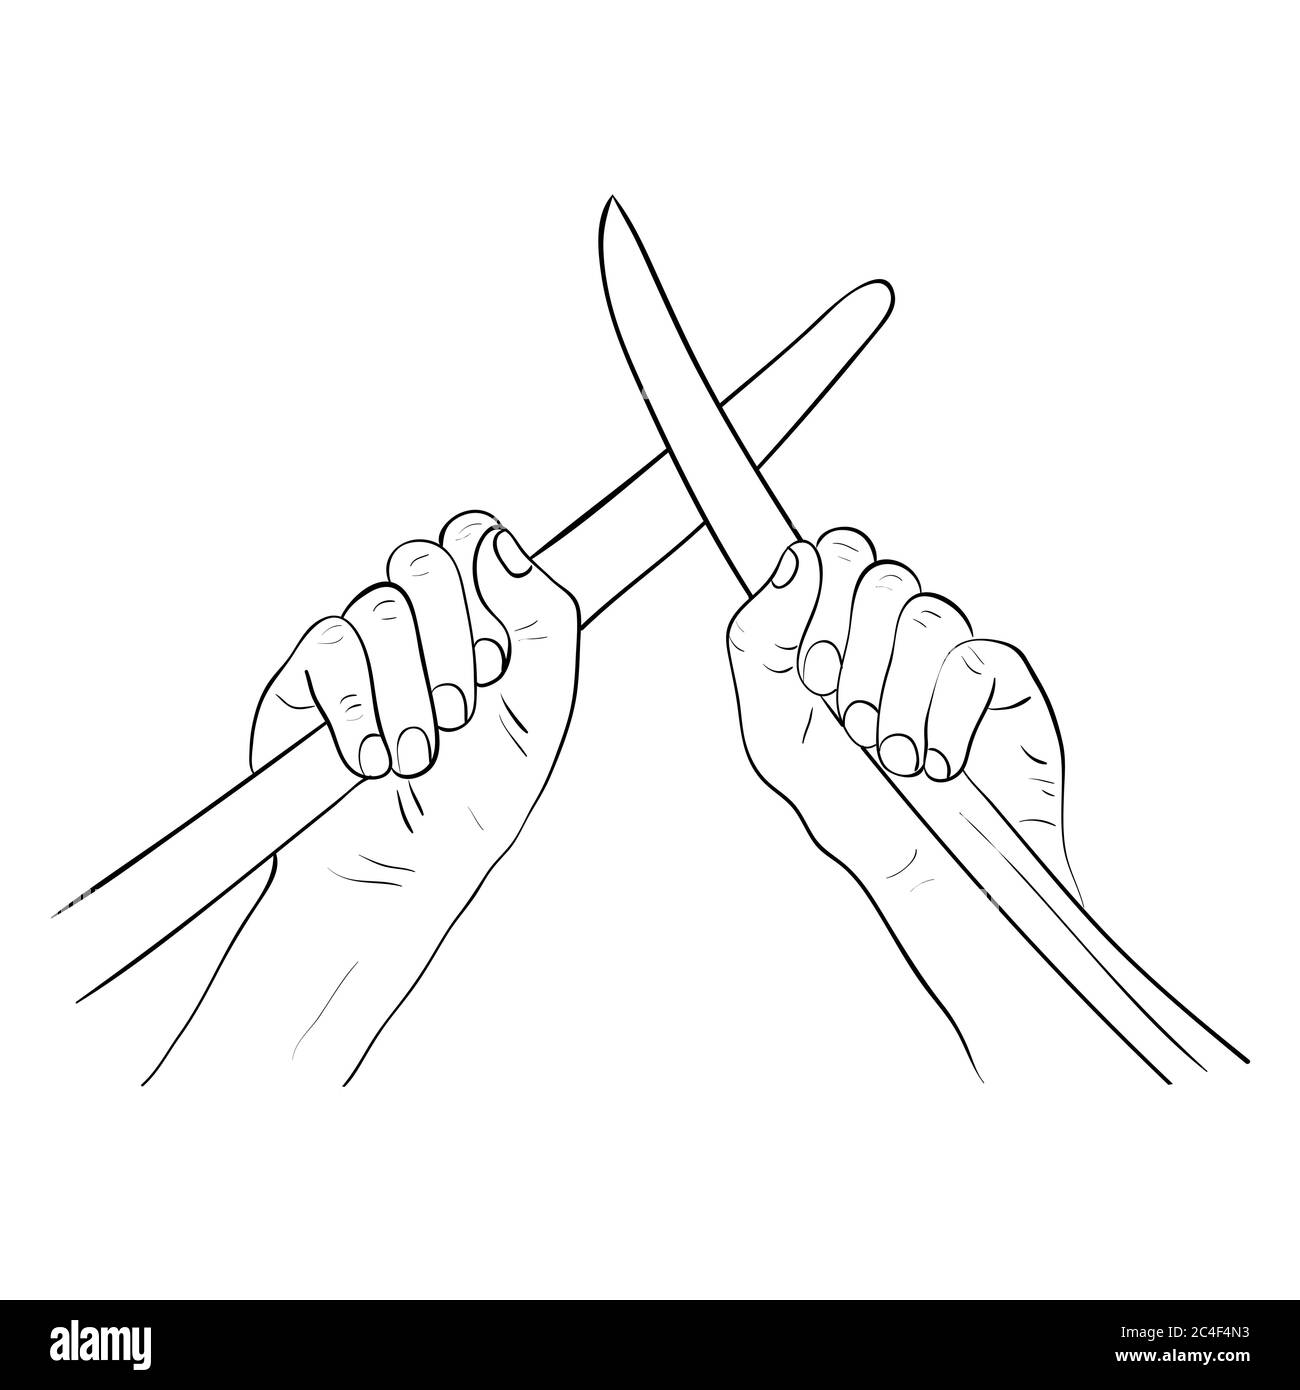 Hände brechen einen Kampf durch das Auseinandernehmen von Schwertschlingen. Cartoon Vektorgrafik. Hände mit gekreuzten Schwertern. Stock Vektor